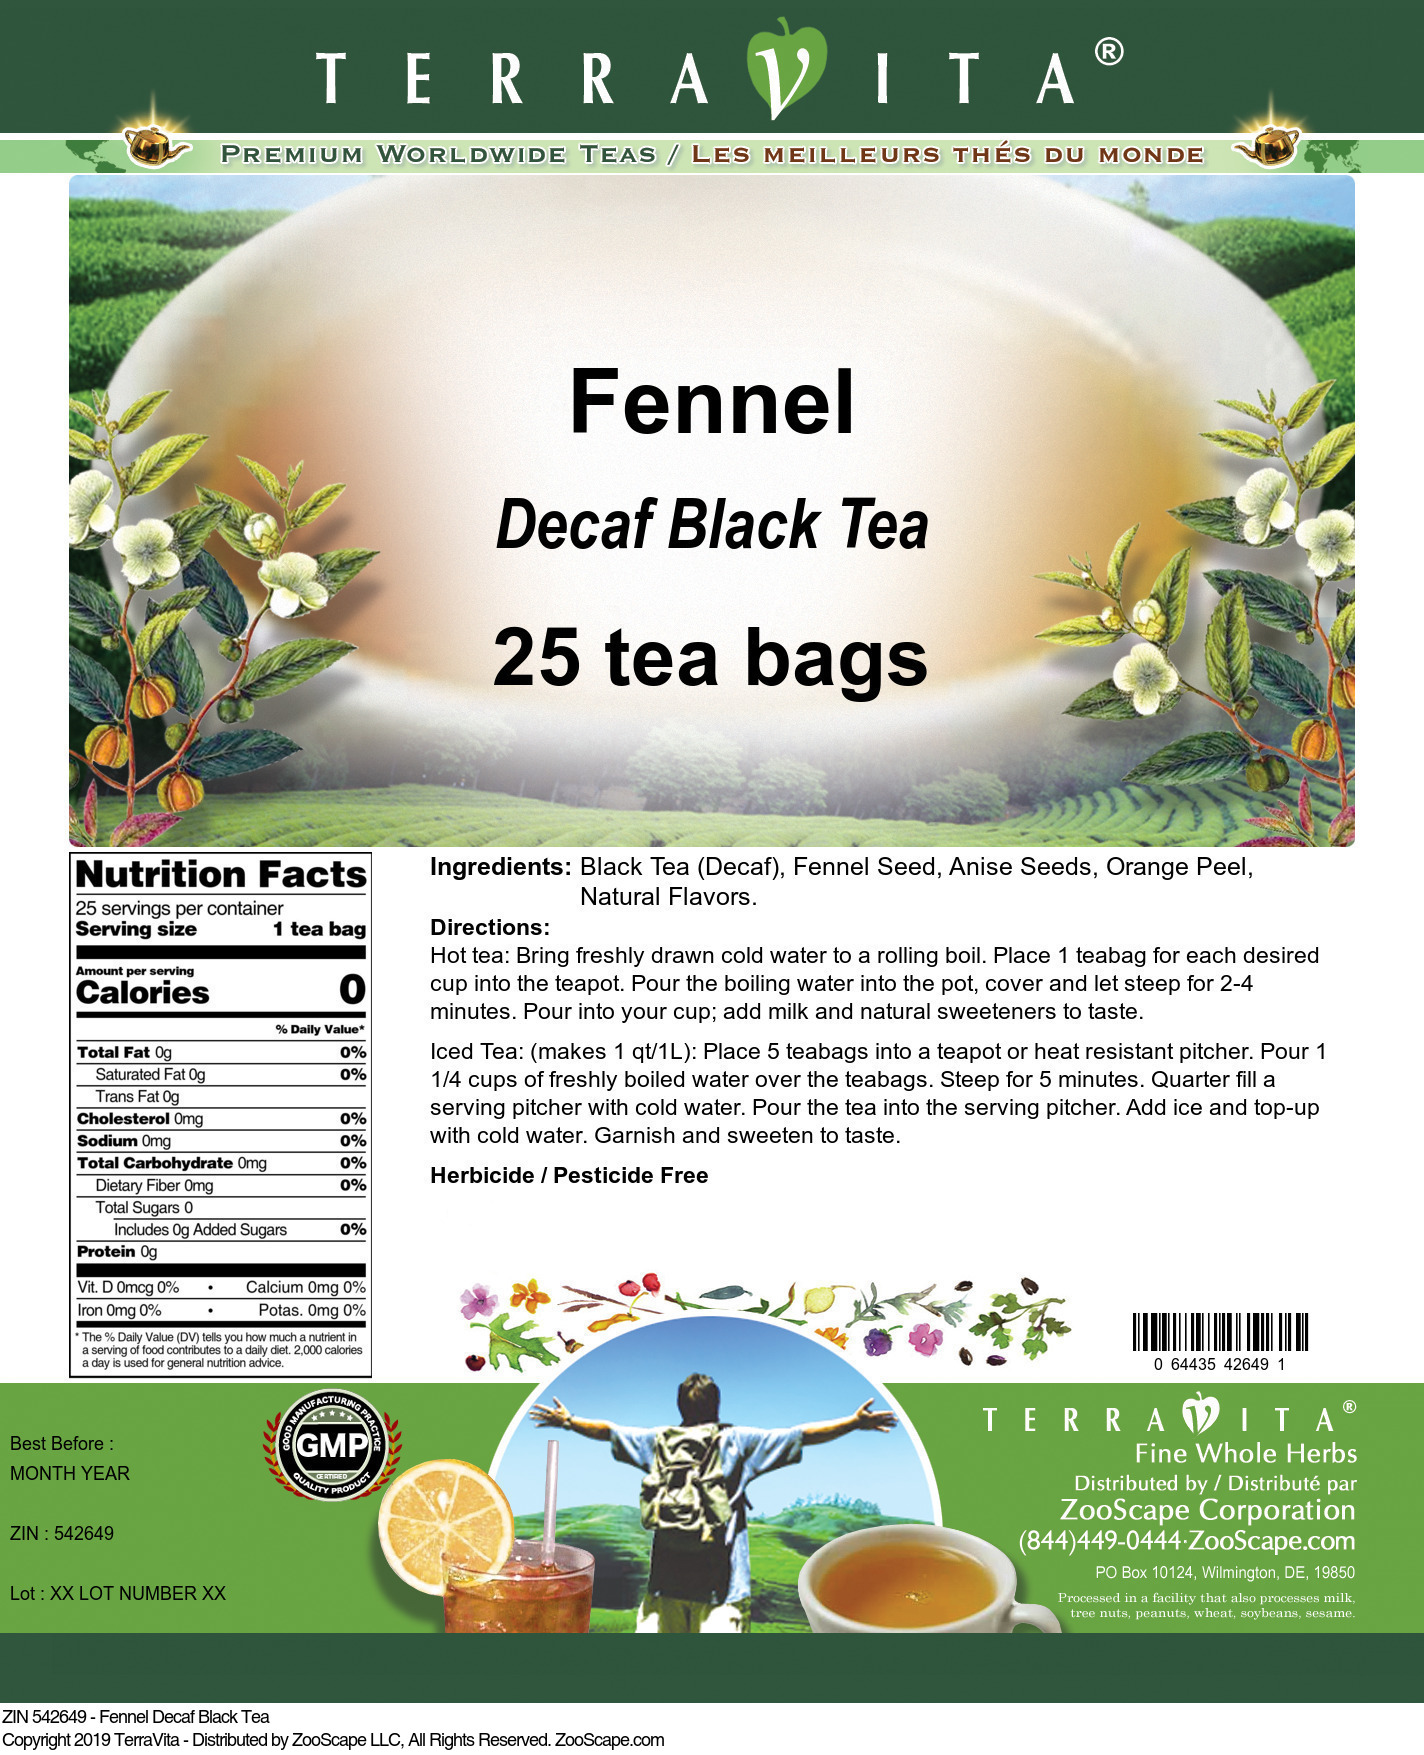 Fennel Decaf Black Tea - Label